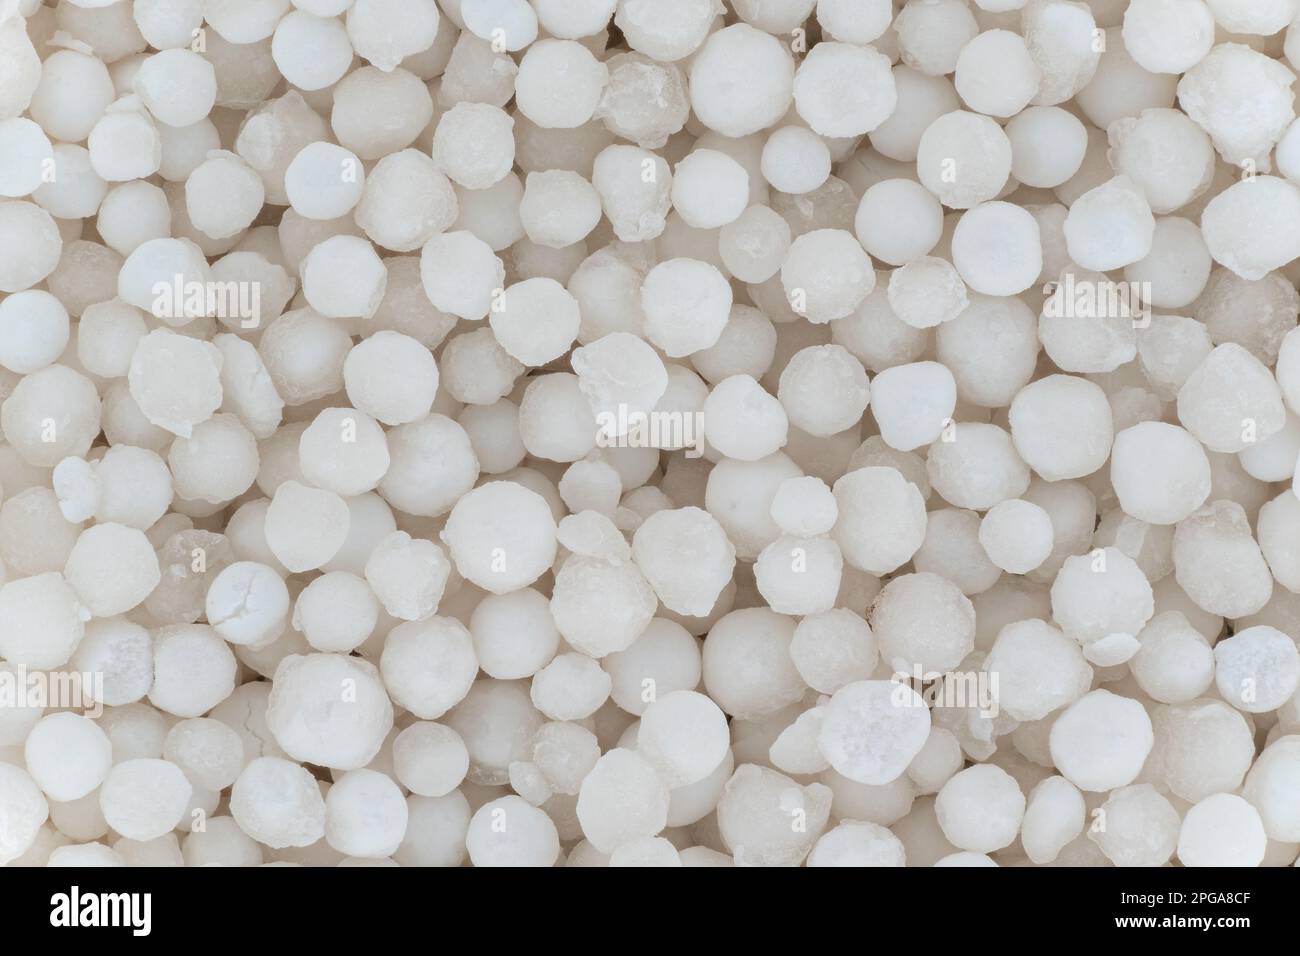 Détail de microscopie en perles d'amidon blanc de tapioca, largeur de l'image 23mm Banque D'Images